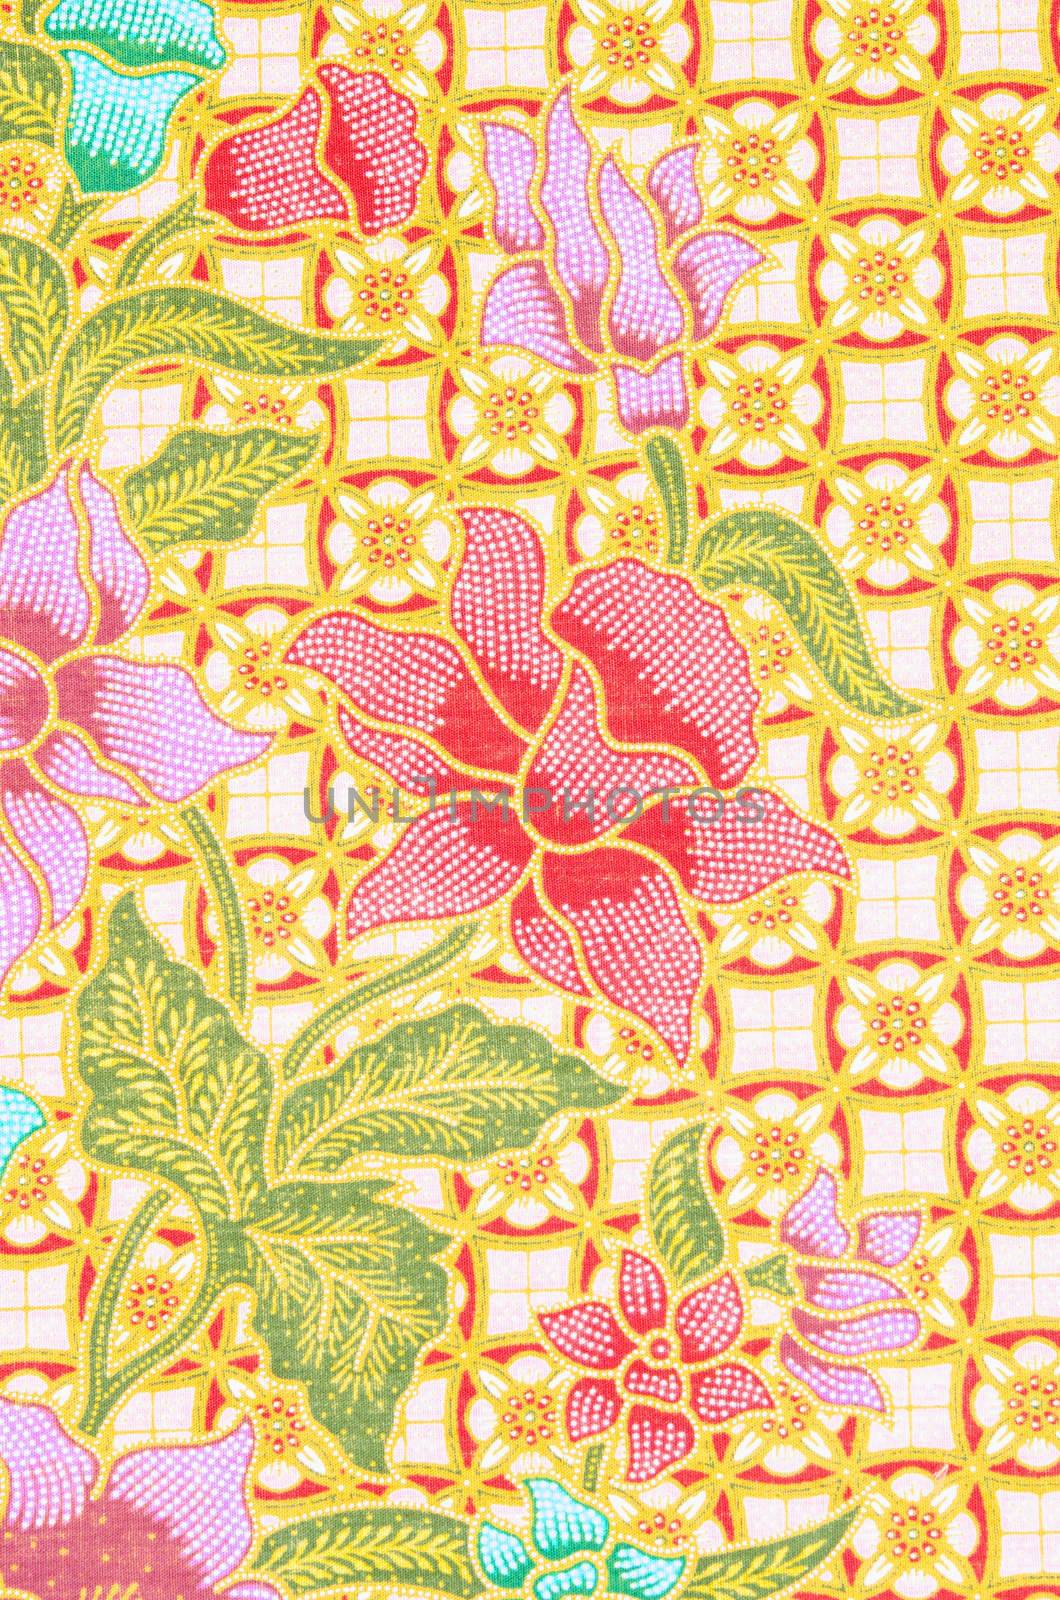 Beautiful pink batik patterns by Gamjai